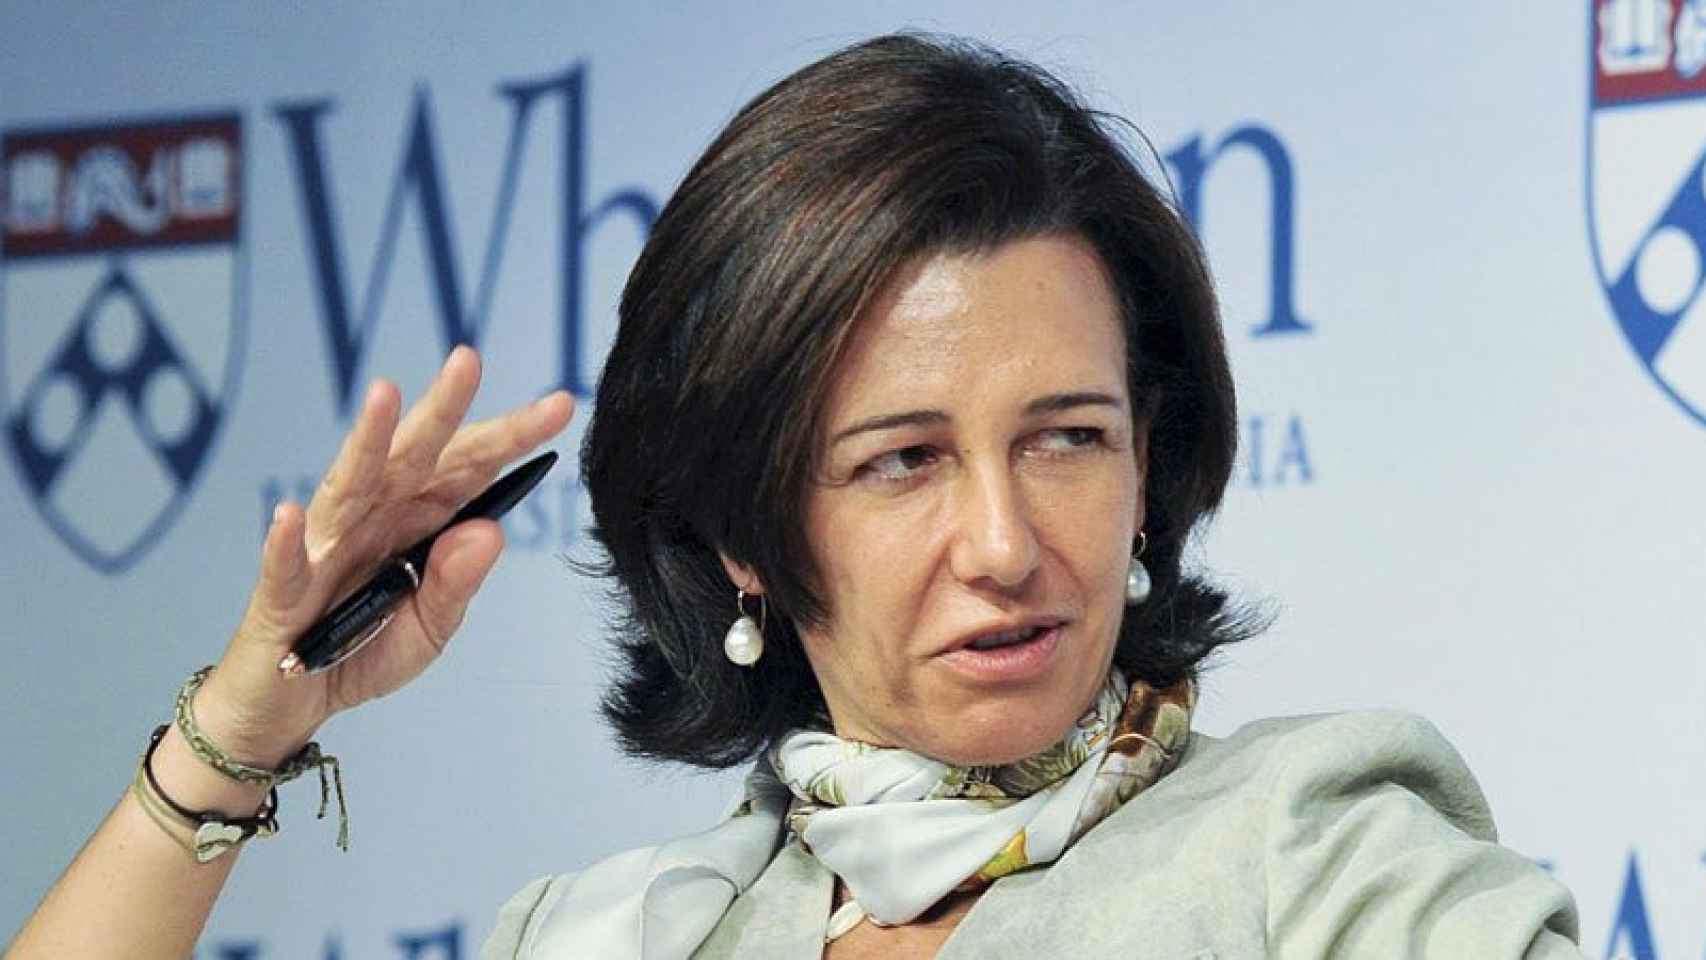 Ana Patricia Botín, presidenta de Banco Santander y accionista de referencia del gigante inmobiliario resultante, en una imagen de archivo de 2014.